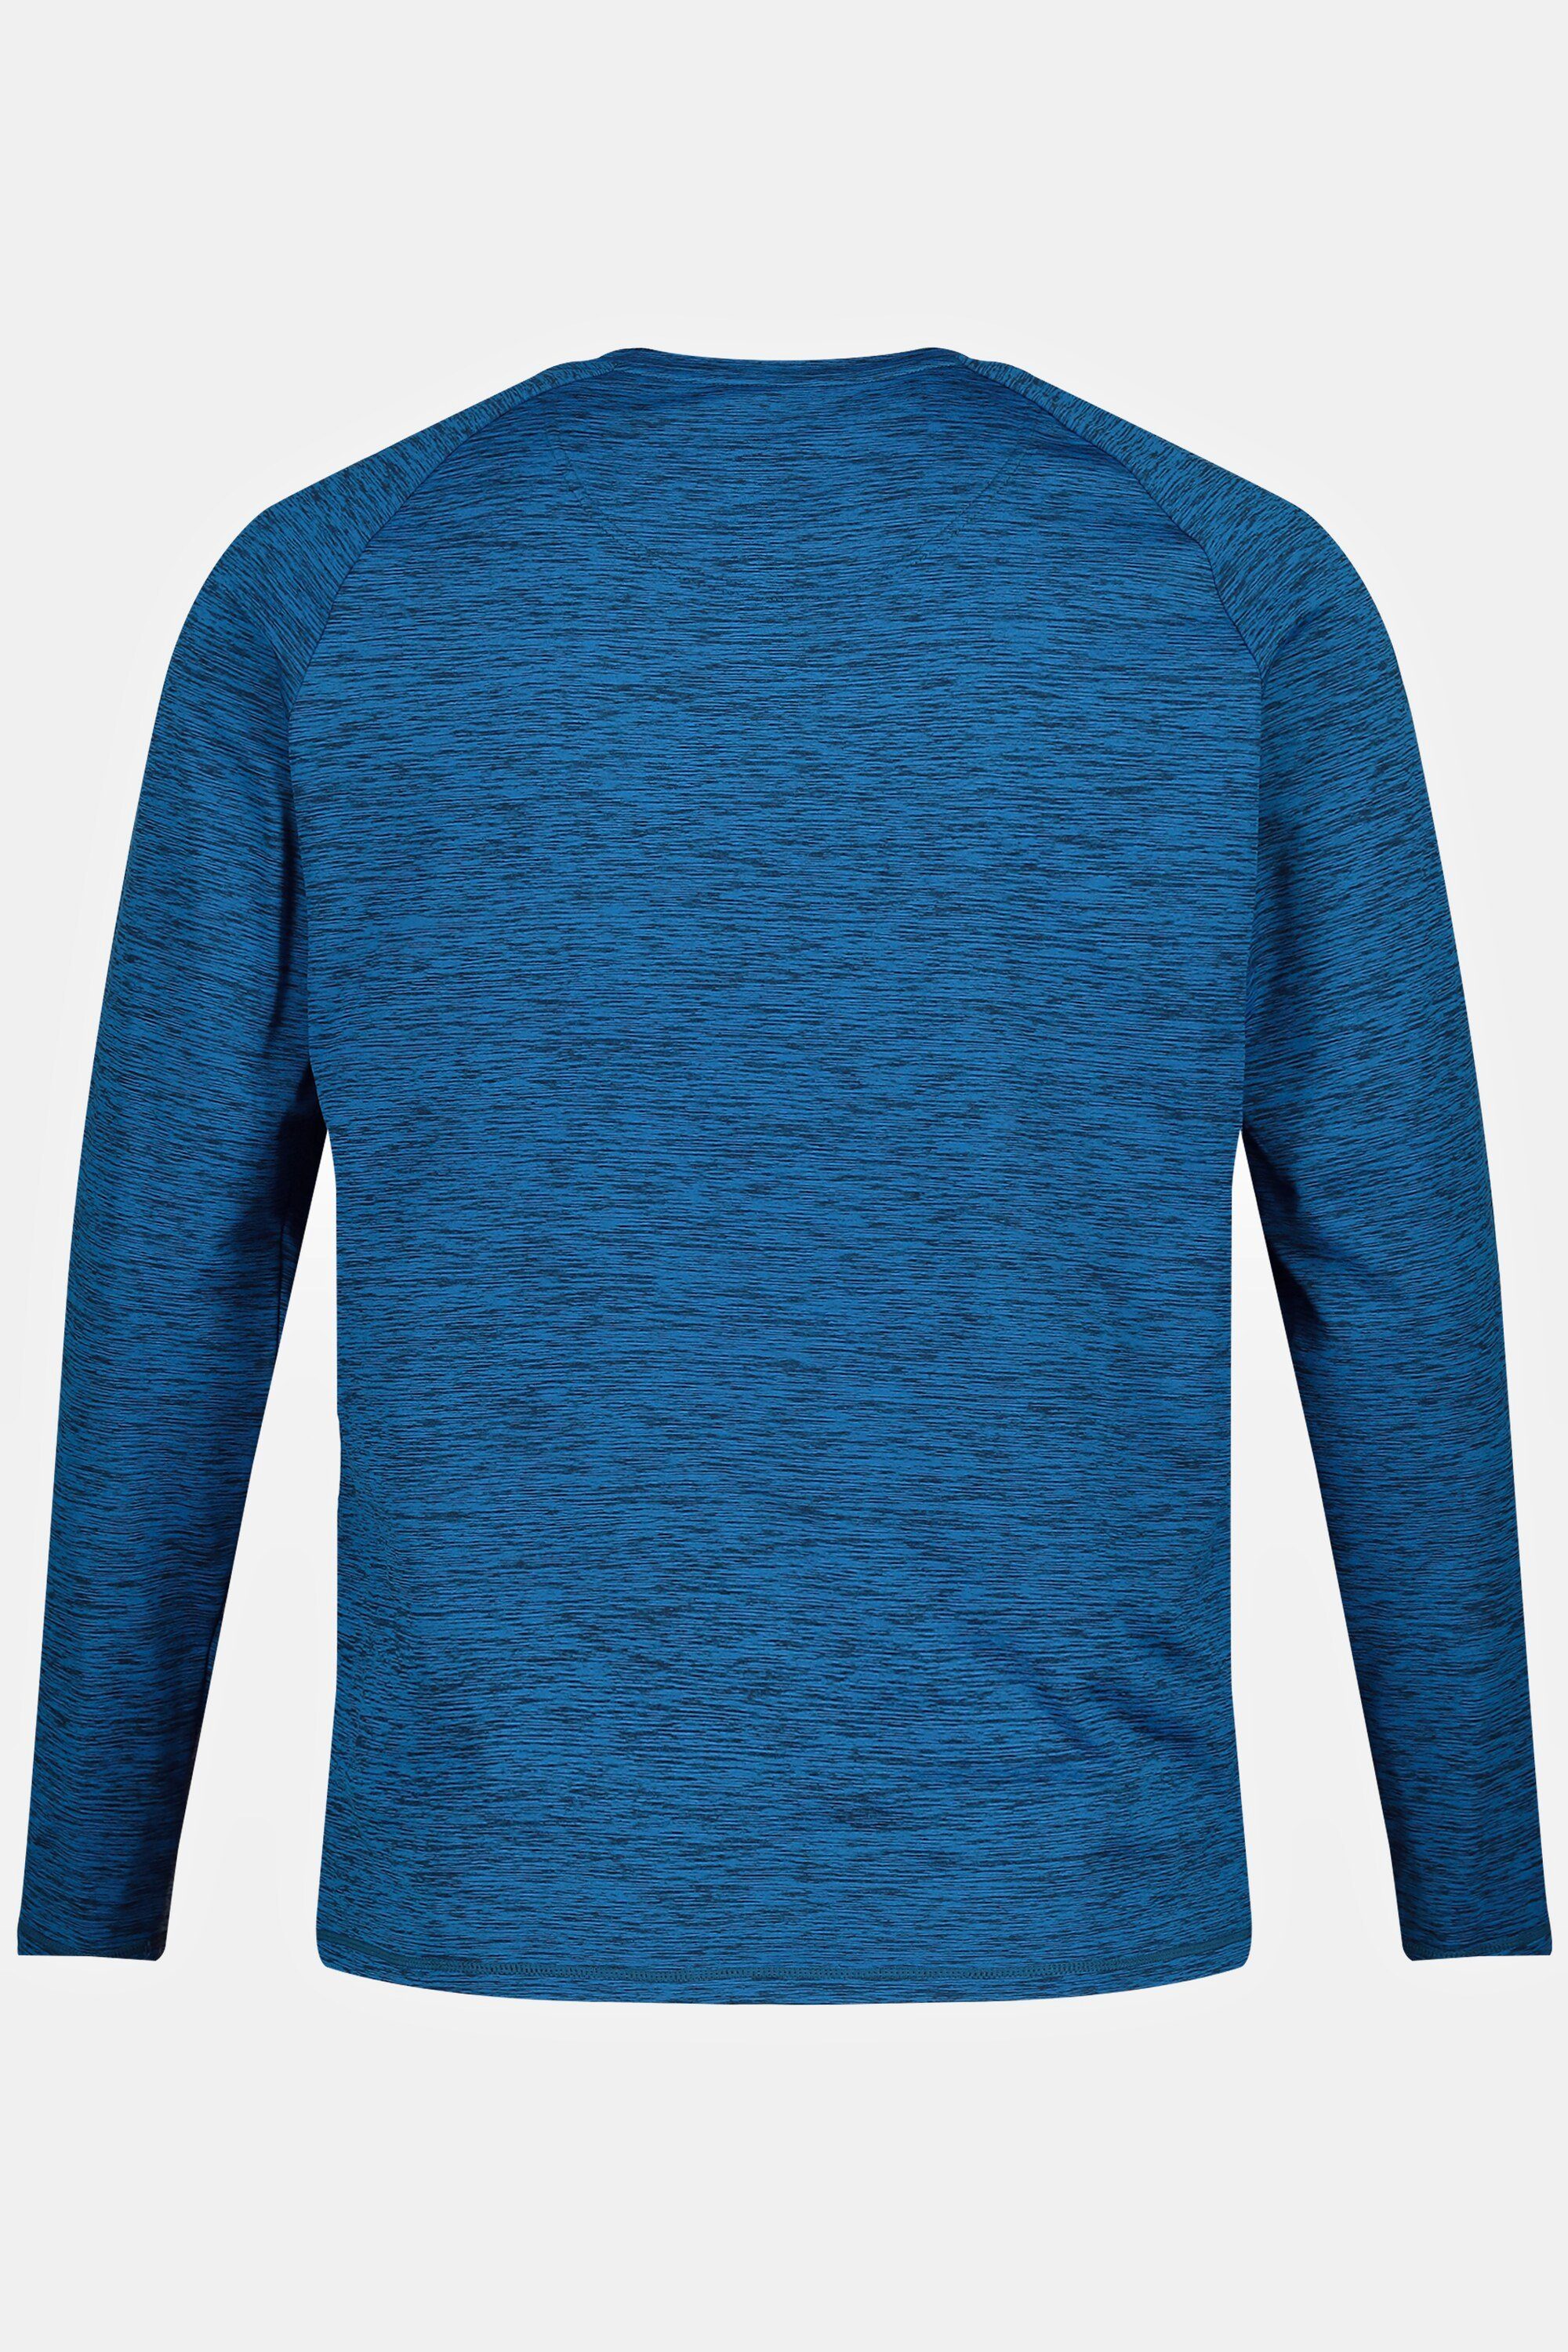 JP1880 FLEXNAMIC® Unterhemd Skewear Skiunterhemd